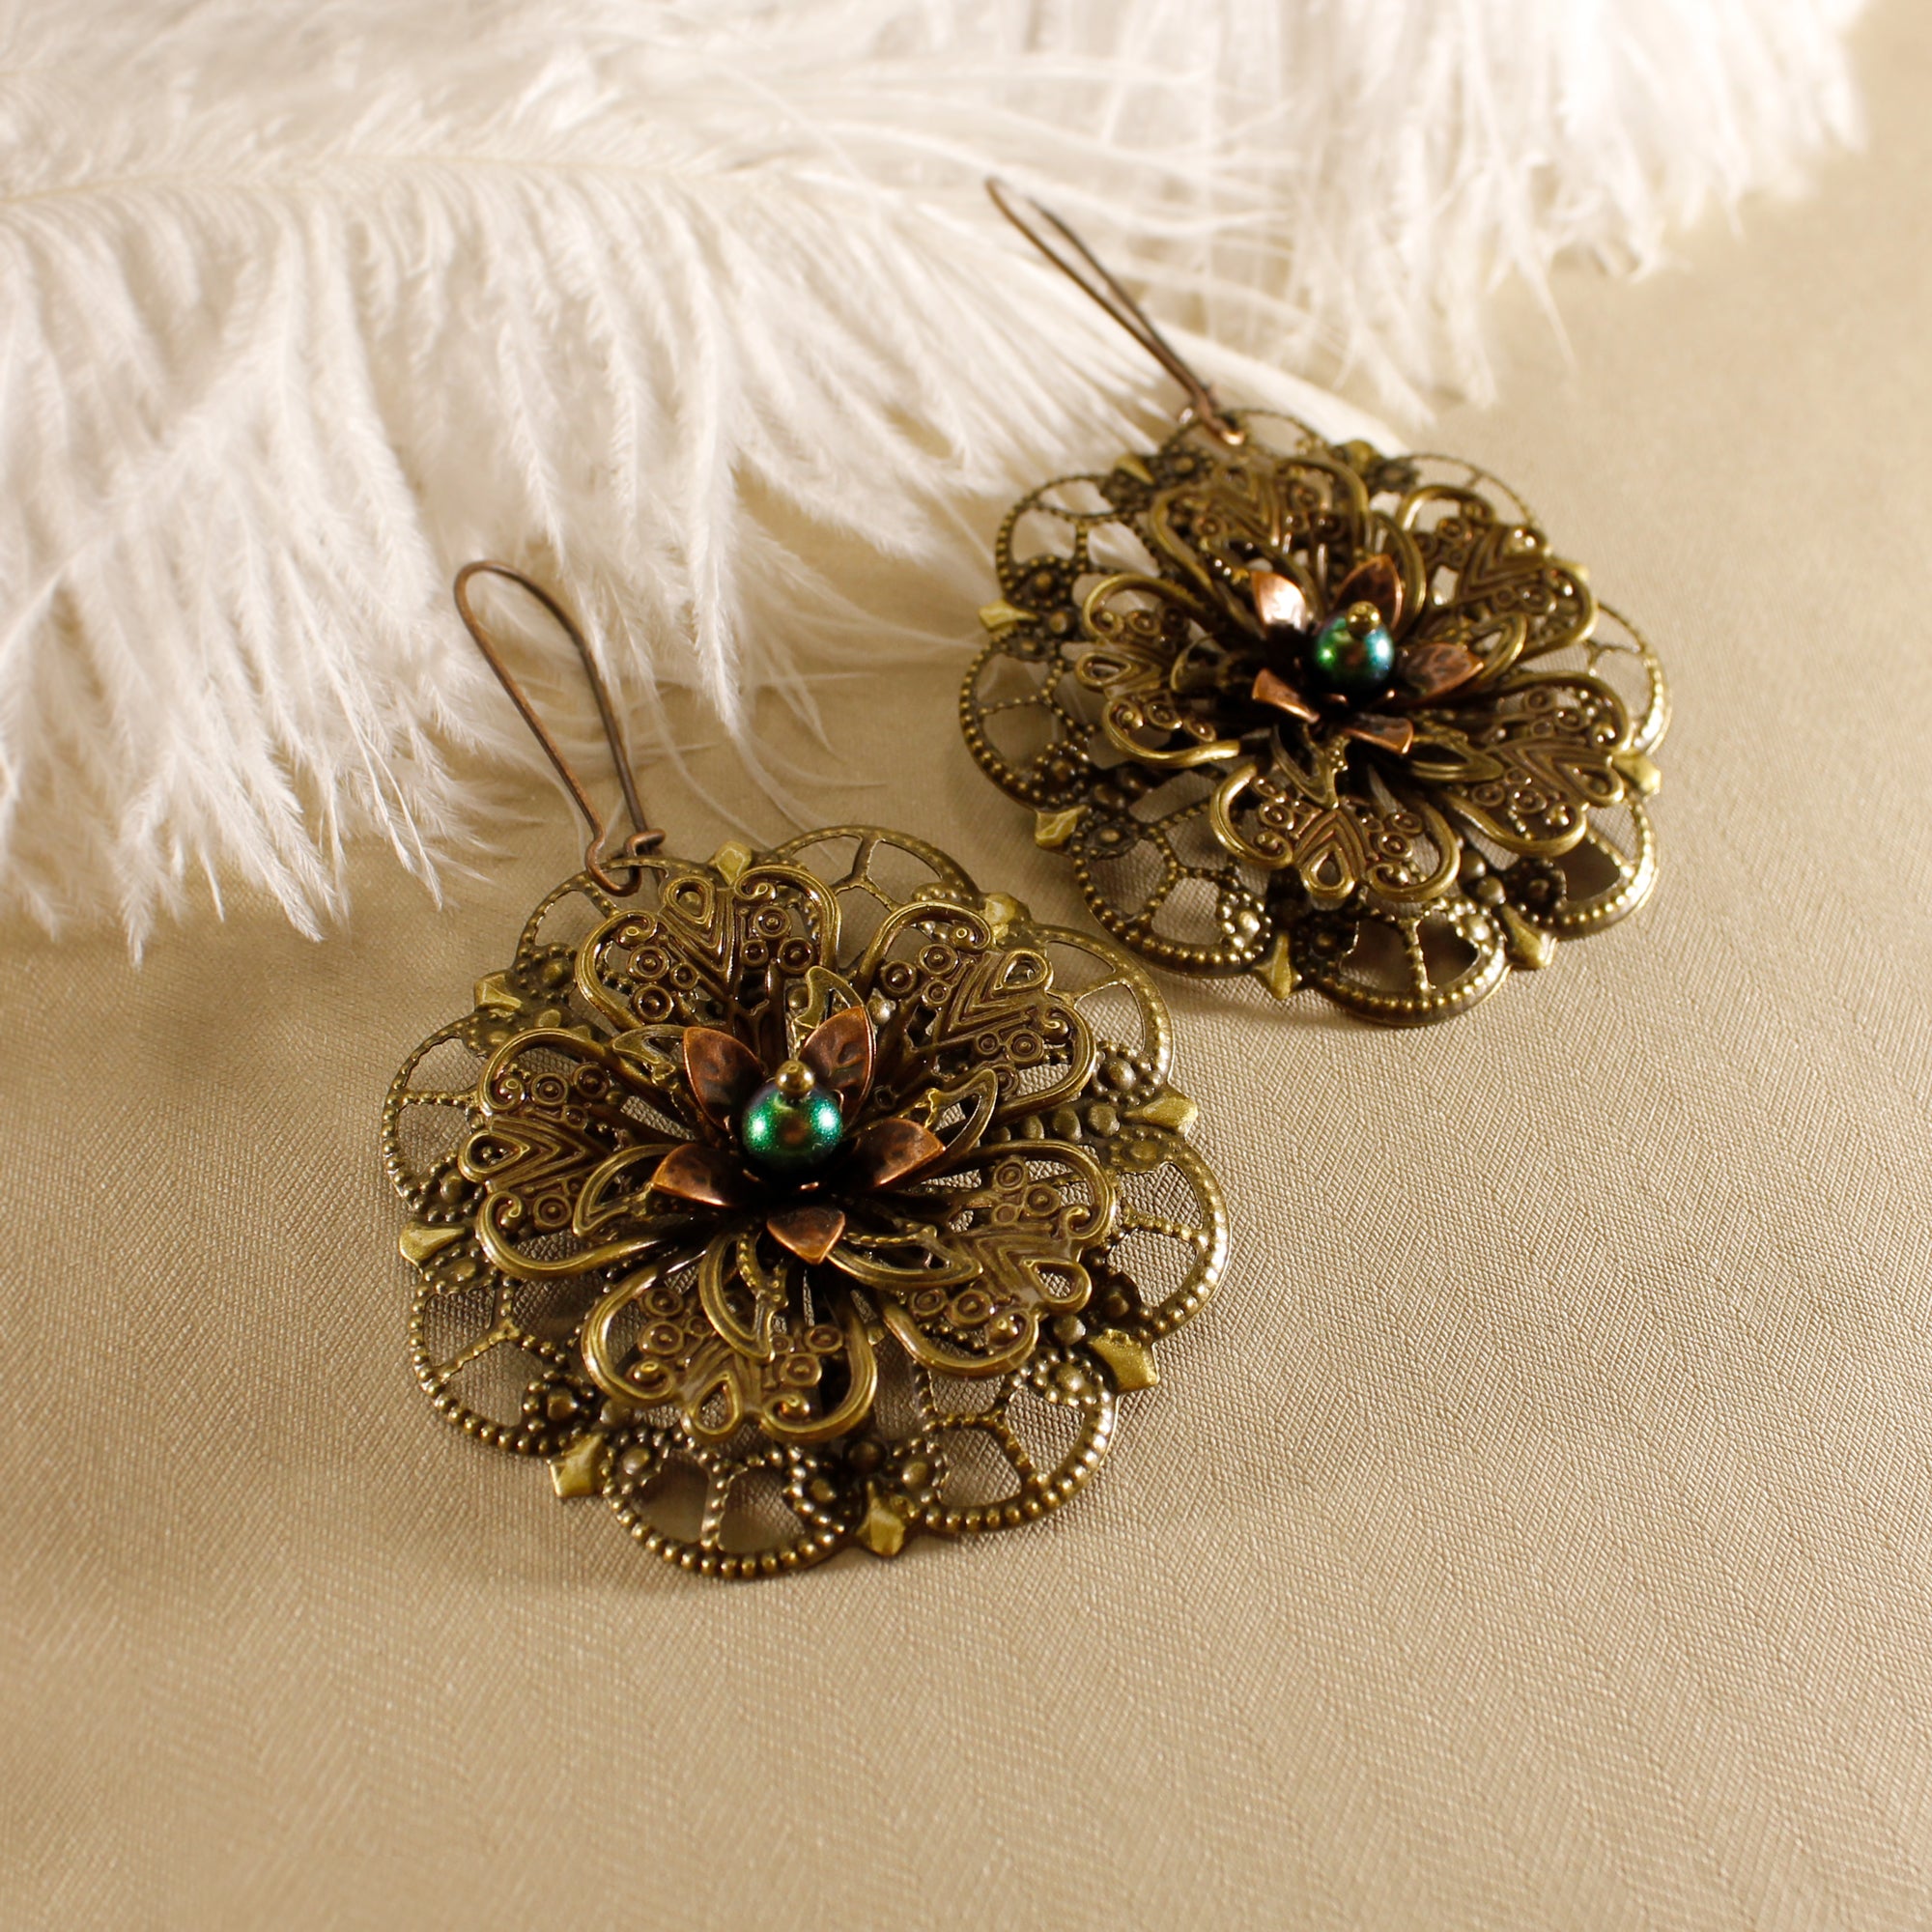 Vintage Style Earrings - Delicate Flowers